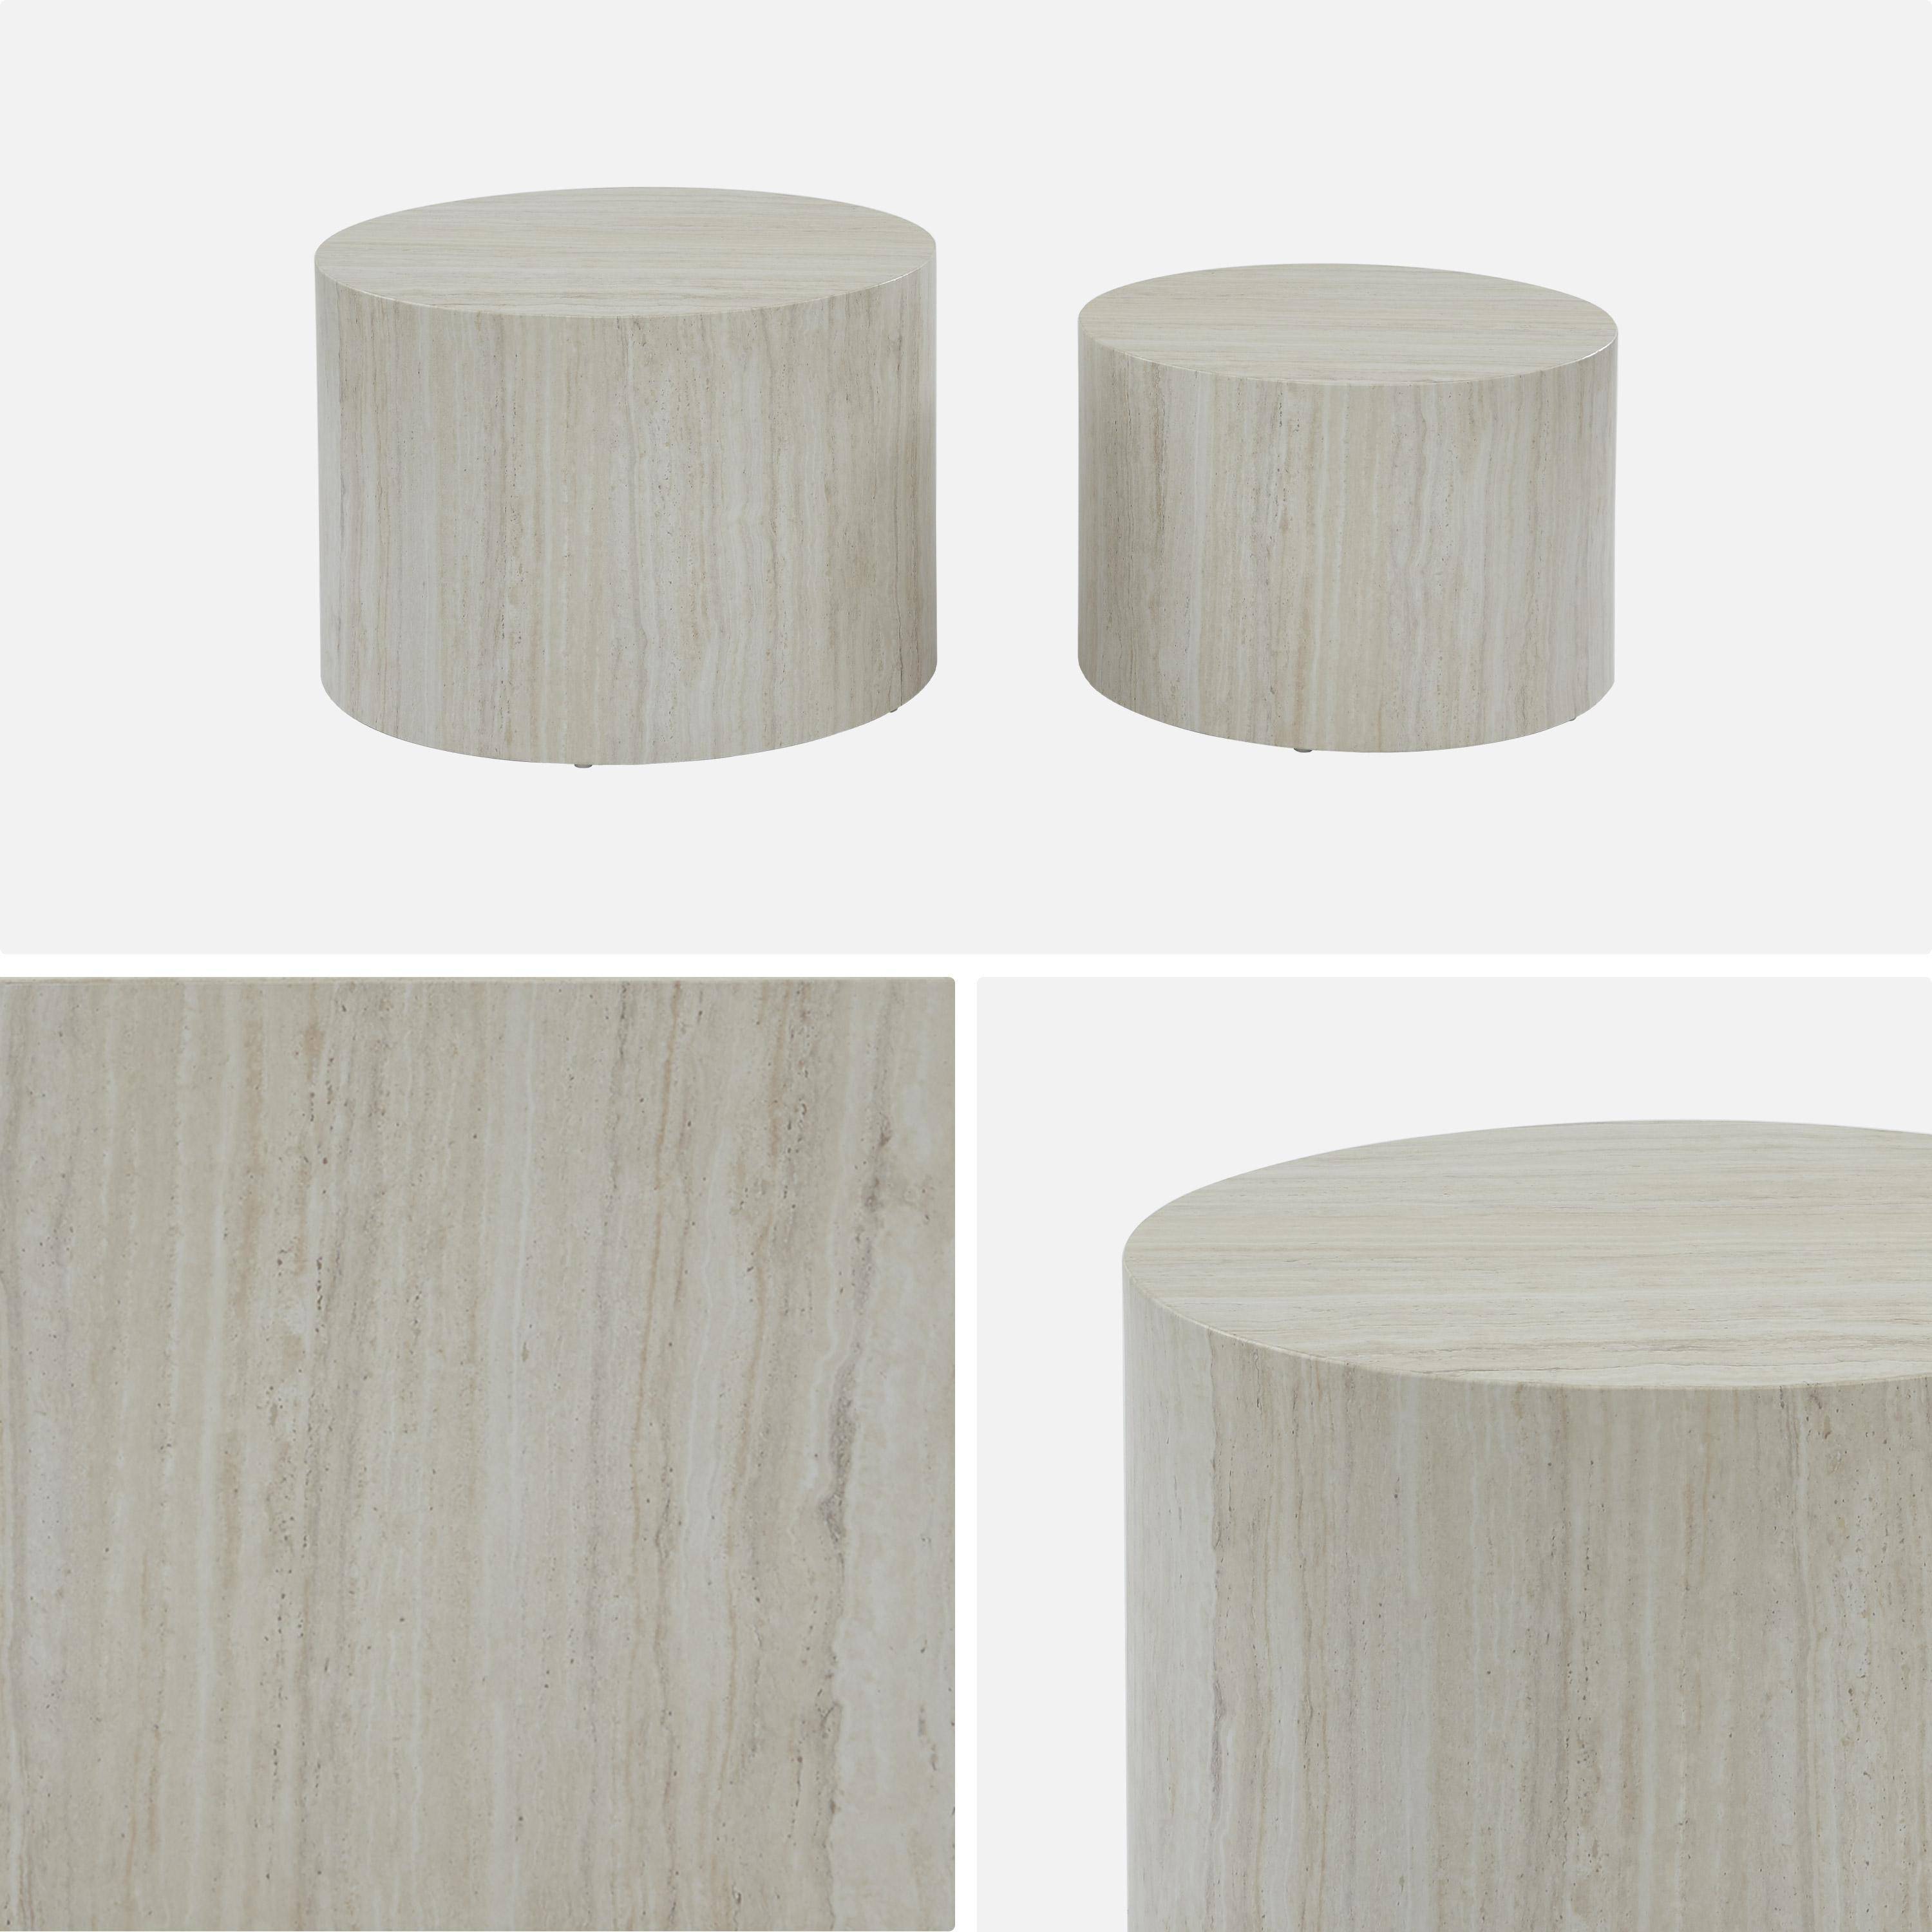 Conjunto de 2 mesas de centro redondas , efeito mármore branco, mesas de encaixe Ø58 x A 40cm / Ø50 x A 33cm,sweeek,Photo6